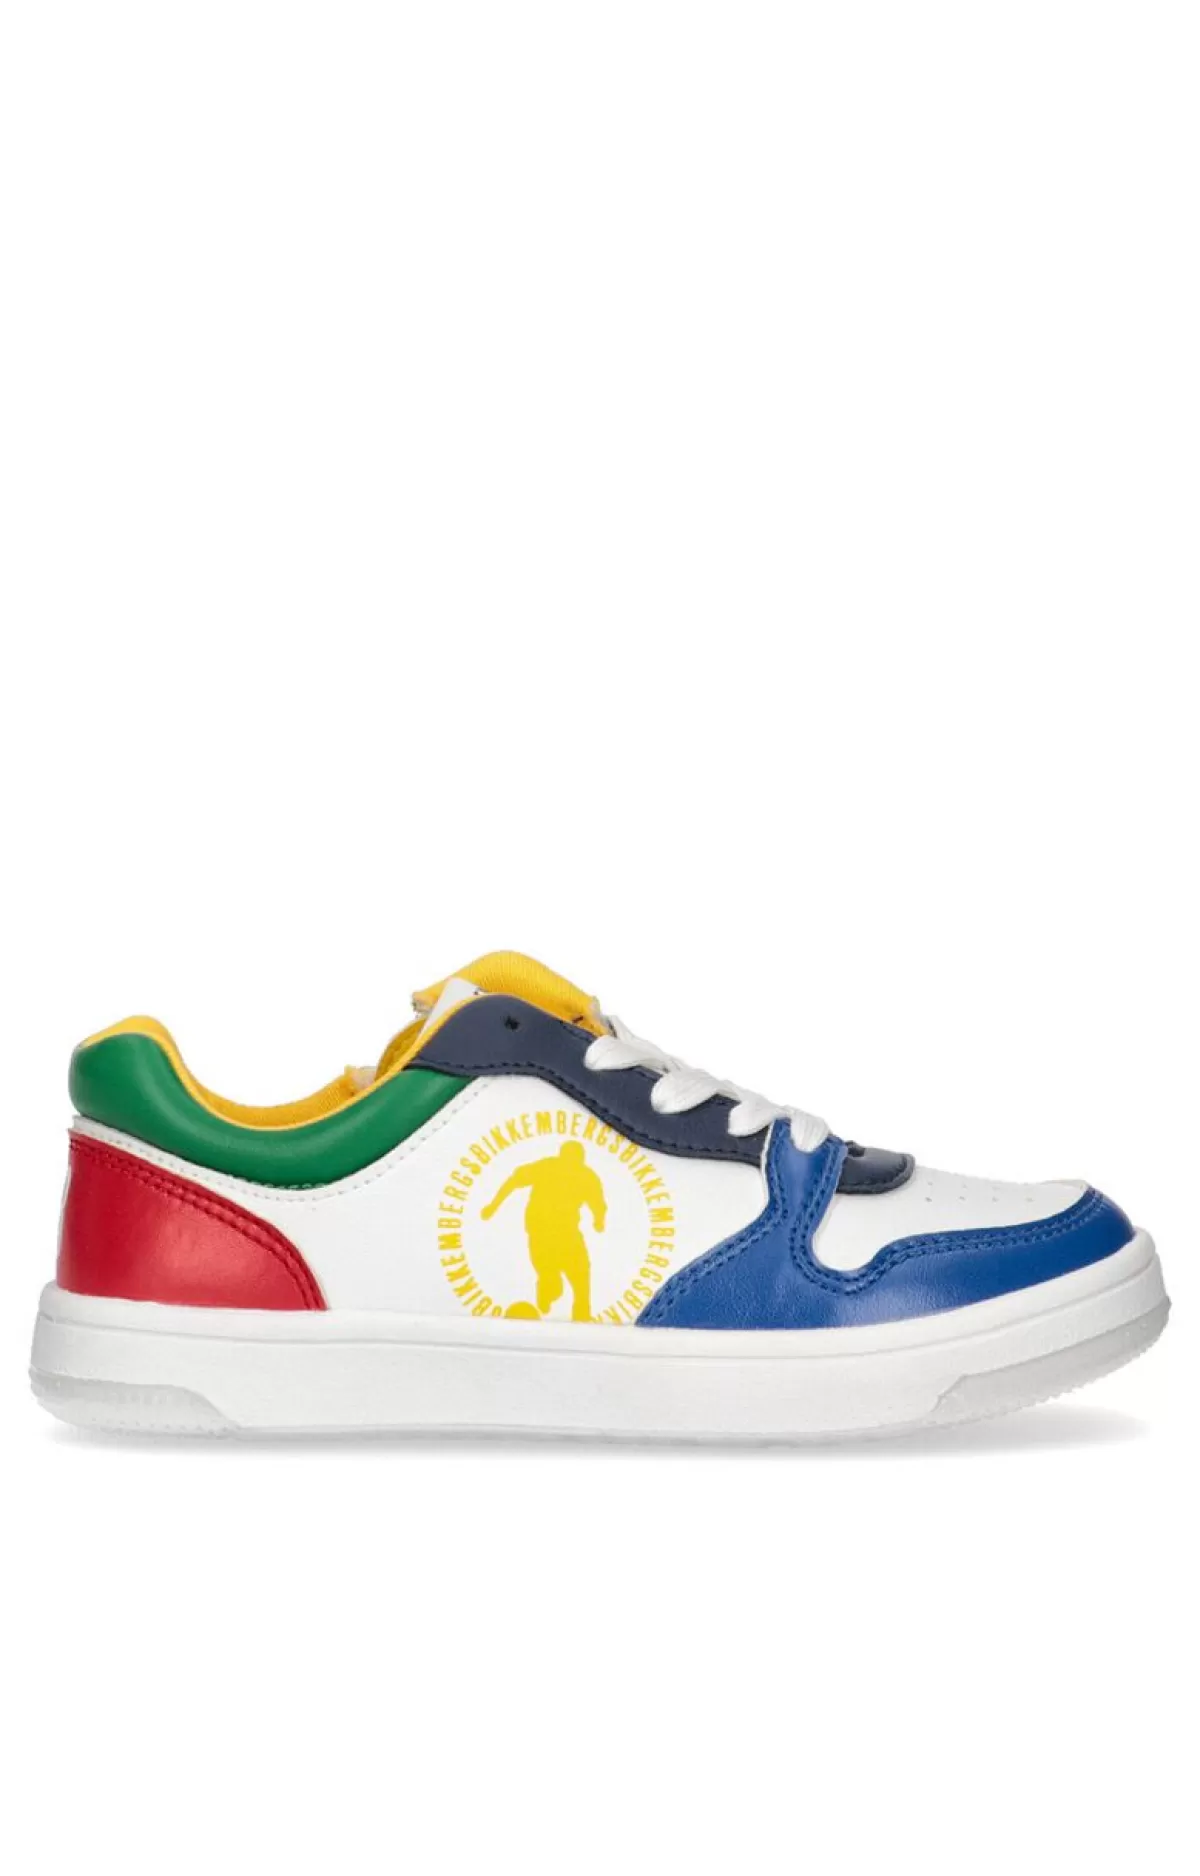 Bikkembergs Boys' Sneakers - Lenox White/Multicolor Online